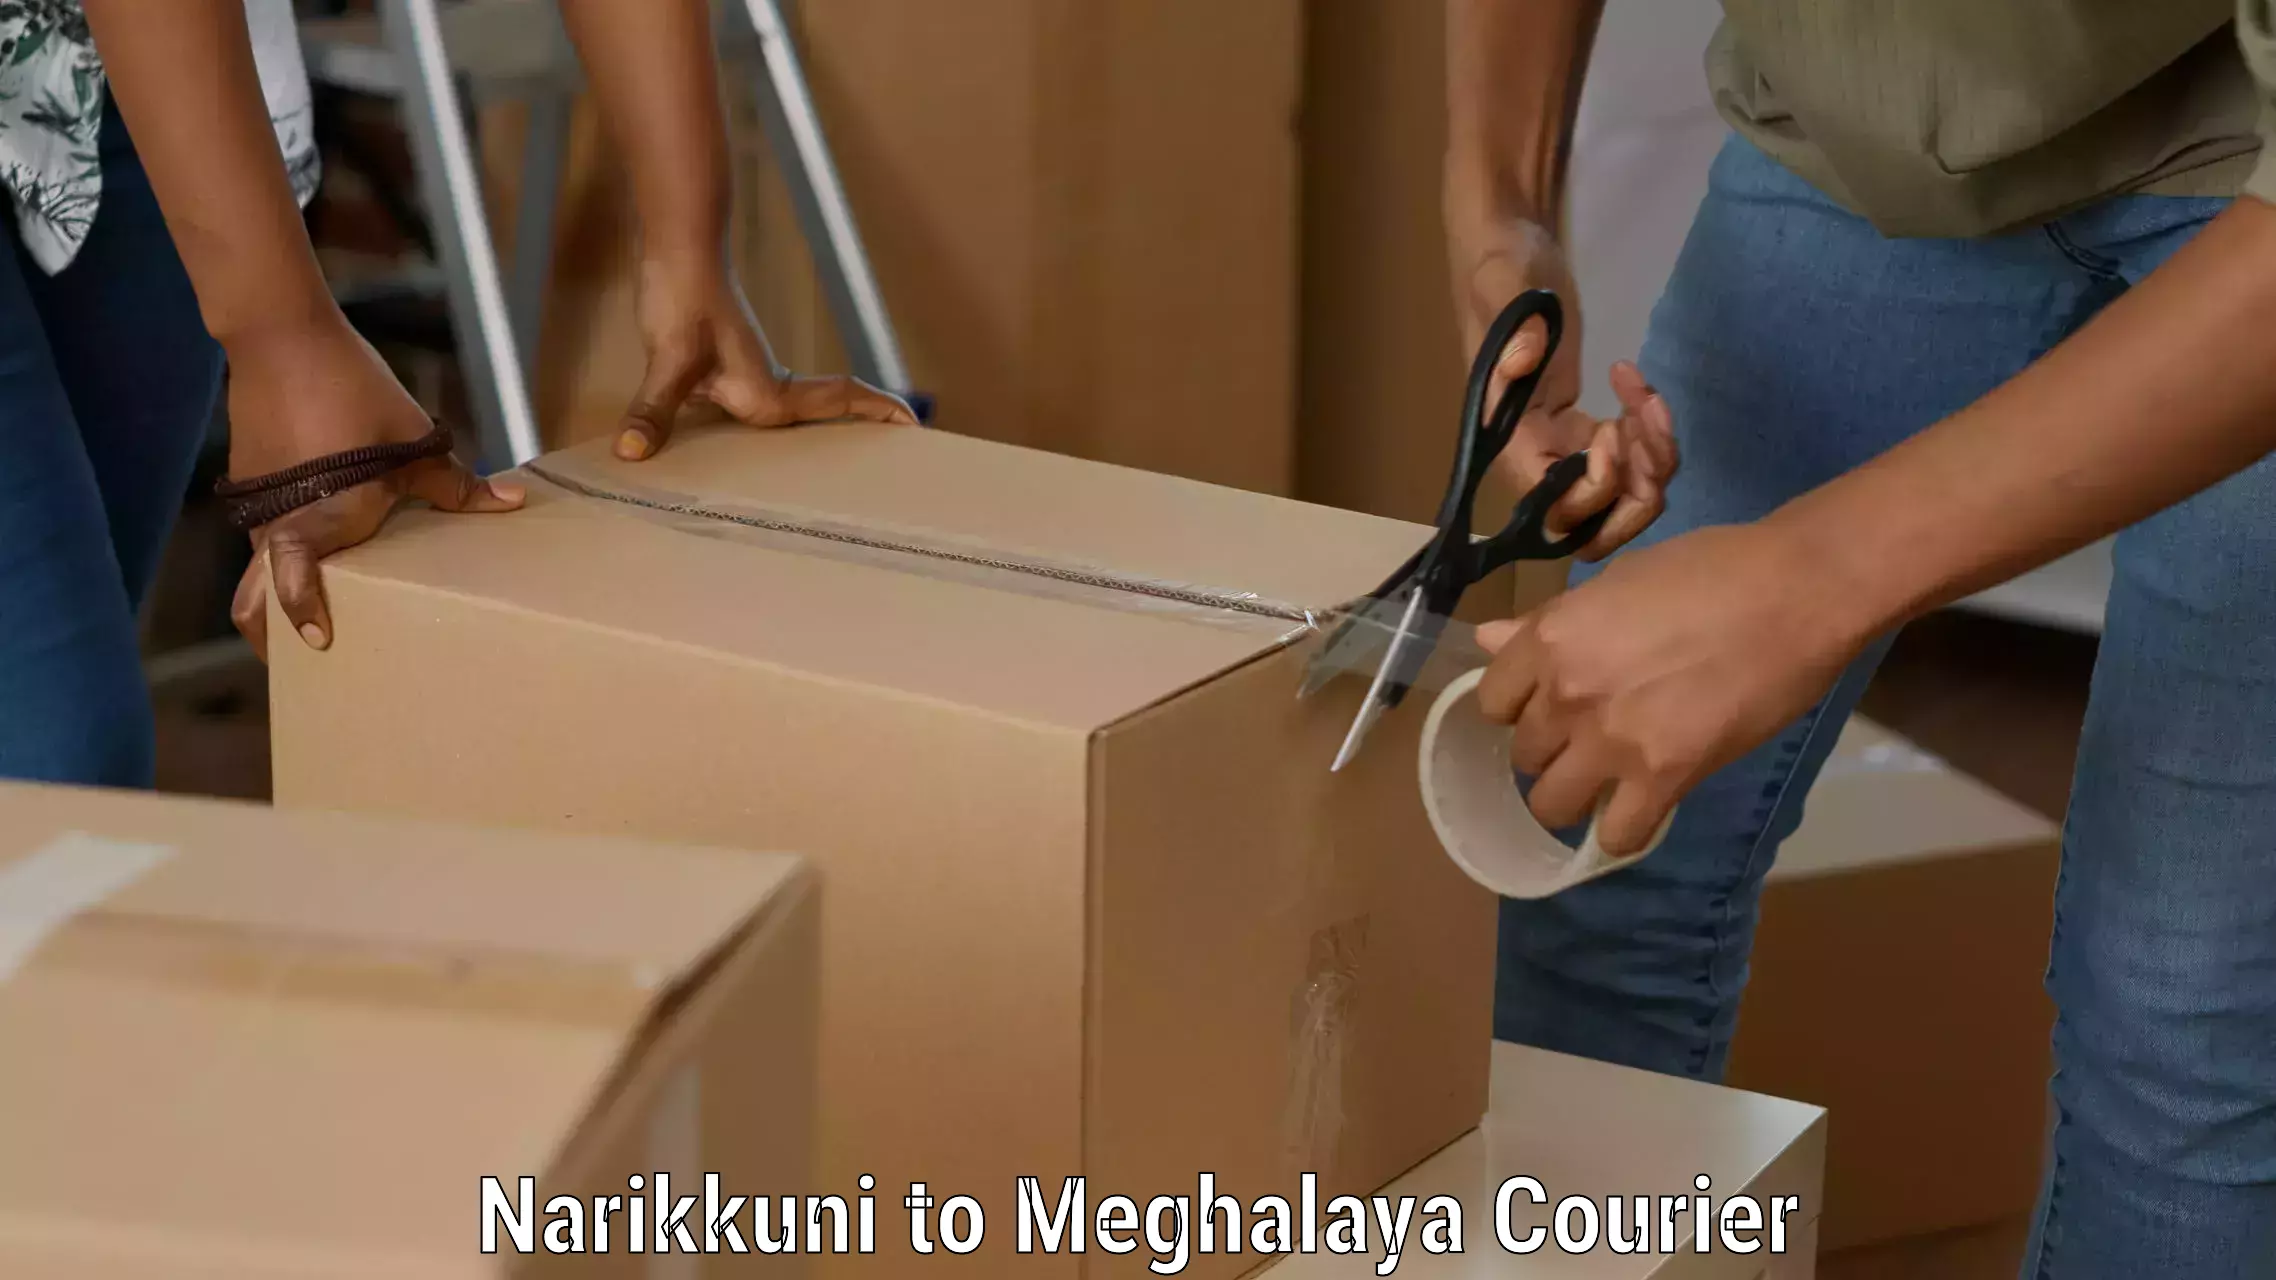 Professional parcel services Narikkuni to Dkhiah West